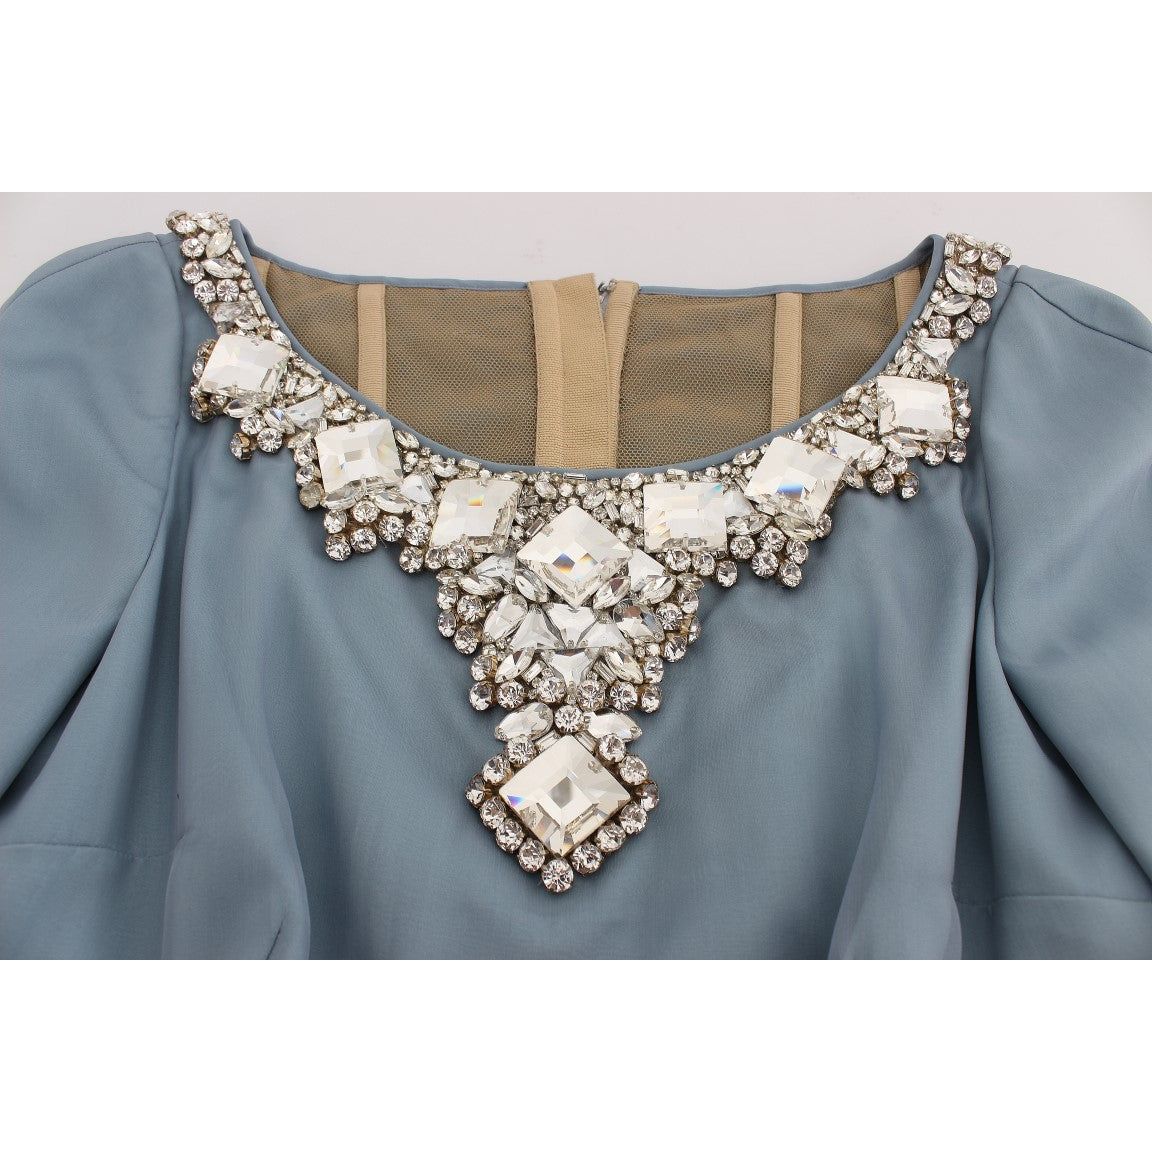 Dolce & Gabbana Elegant Crystal-Embellished Silk Gown blue-silk-crystal-sheath-gown-ball-dress 72691-blue-silk-crystal-sheath-gown-ball-dress-8.jpg